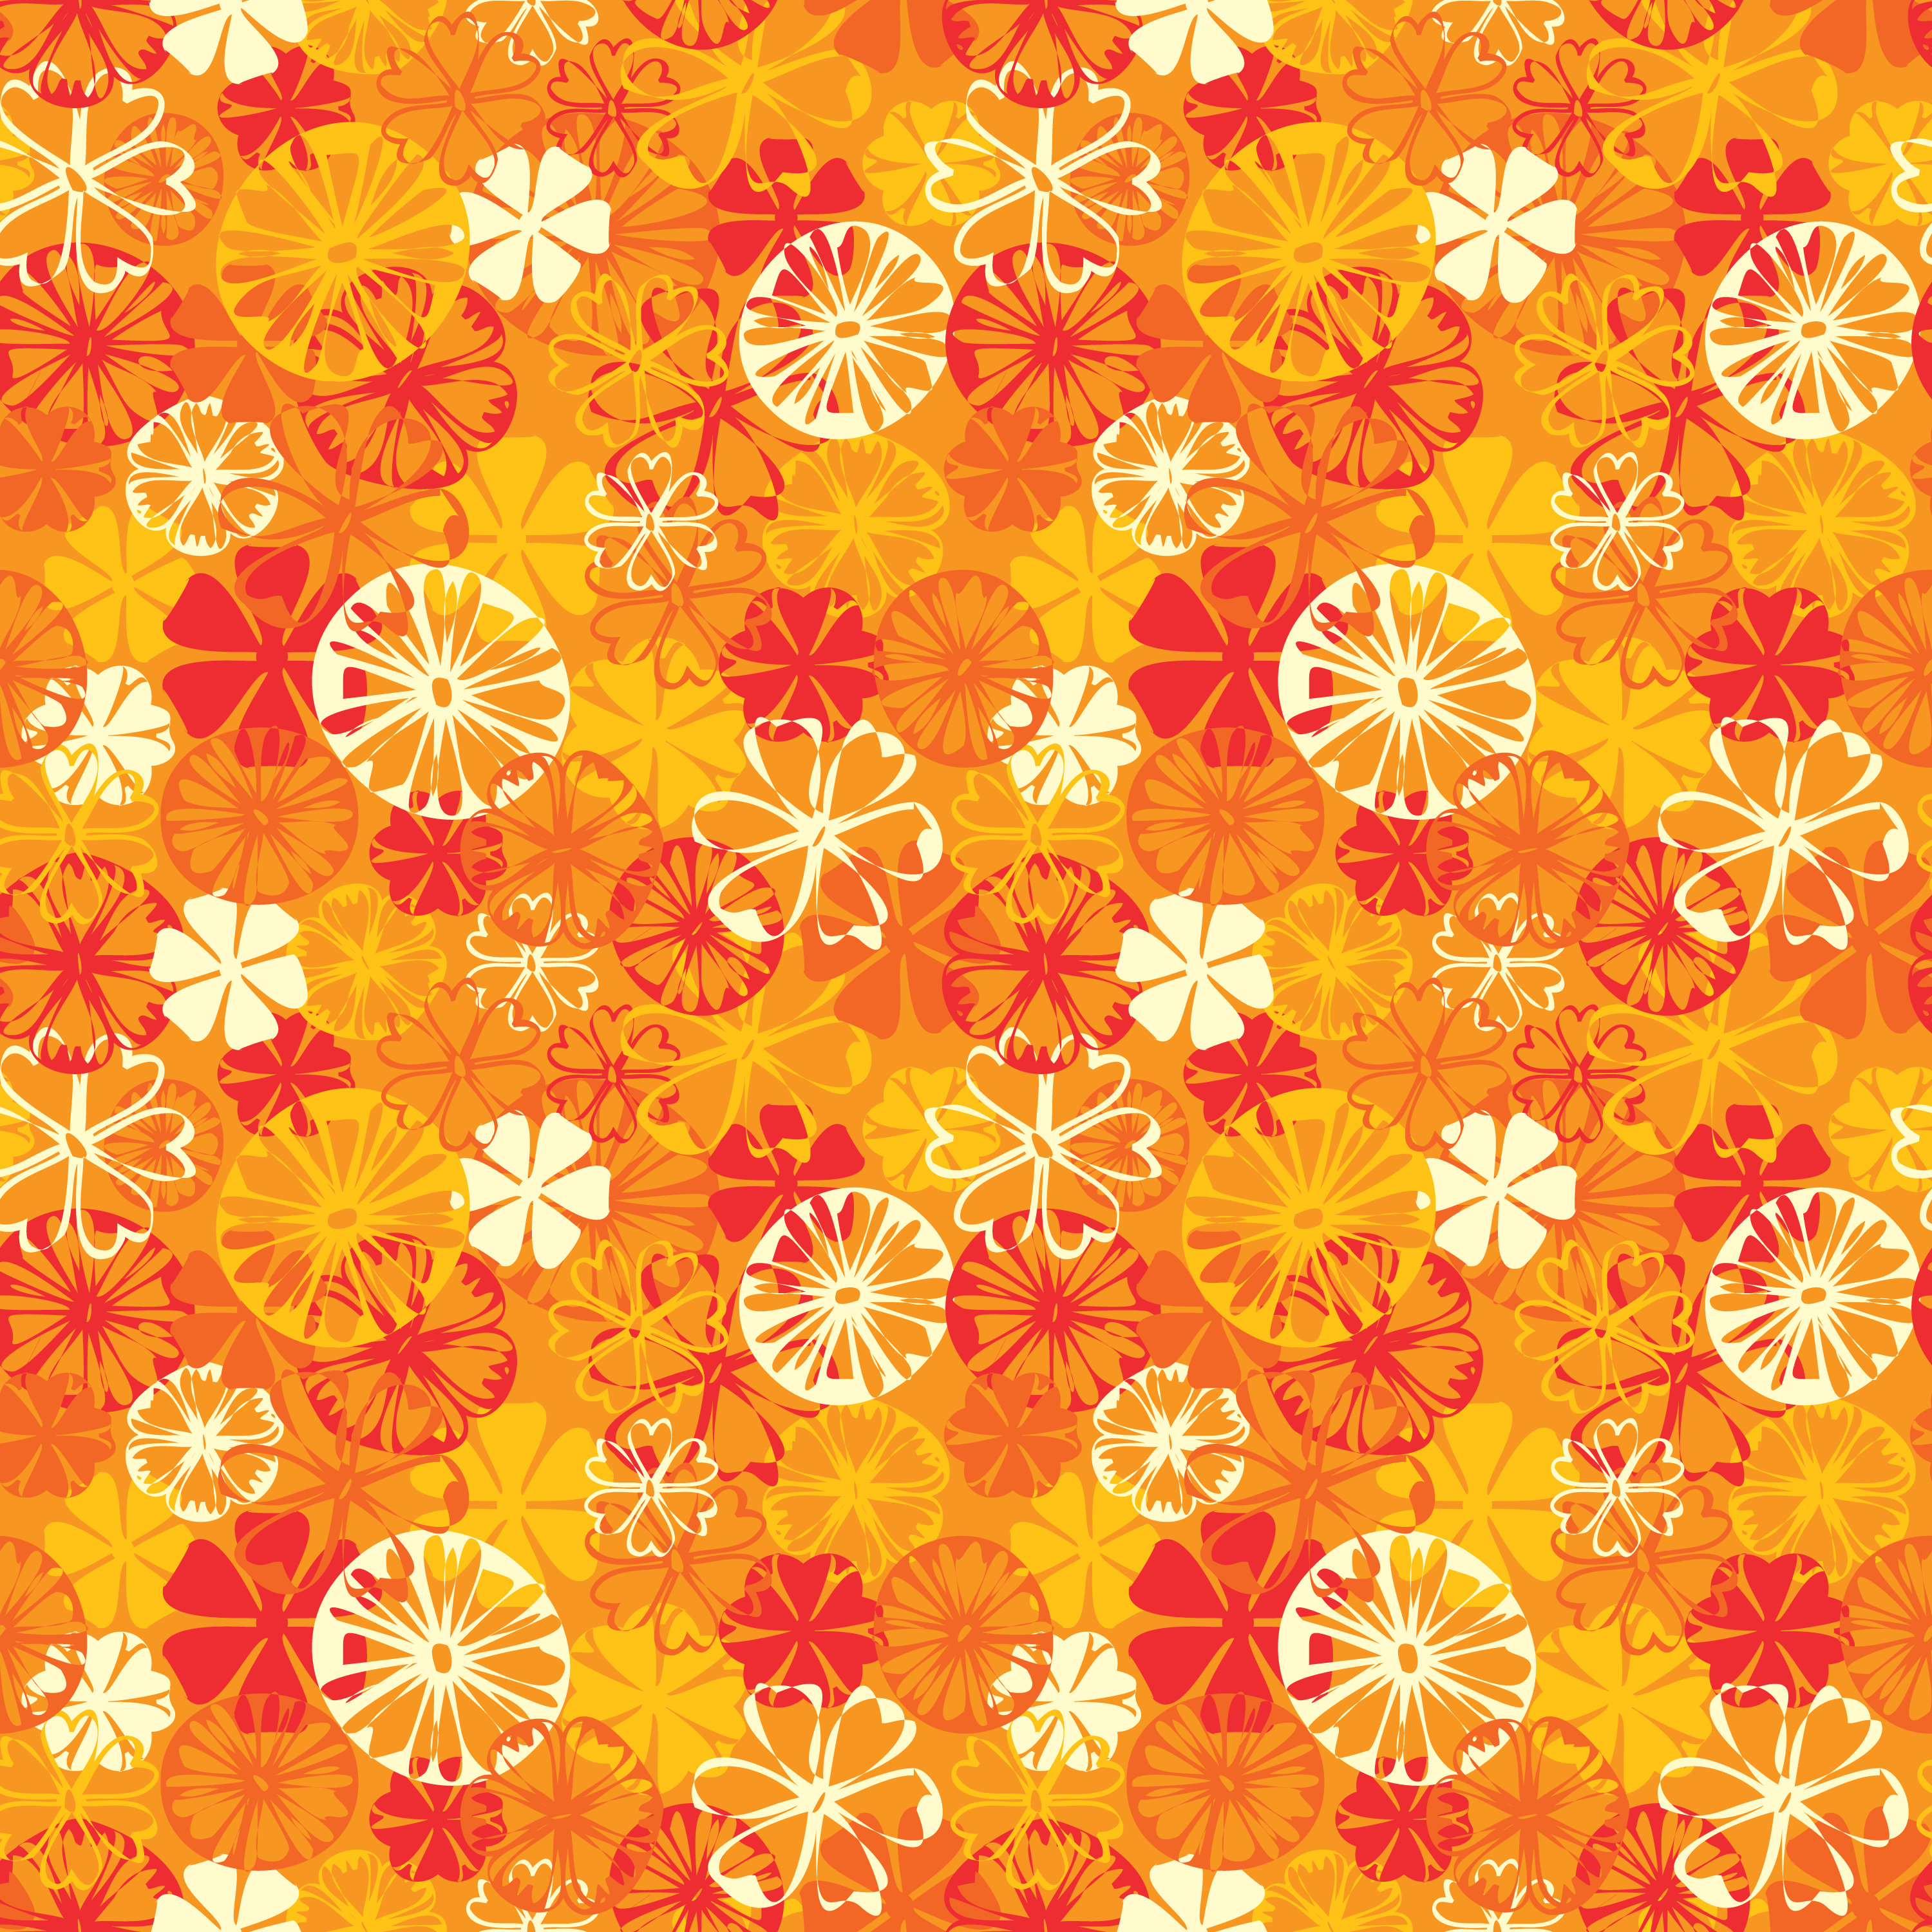 壁紙 背景イラスト 花の模様 柄 パターン No 043 赤白黄 たくさん